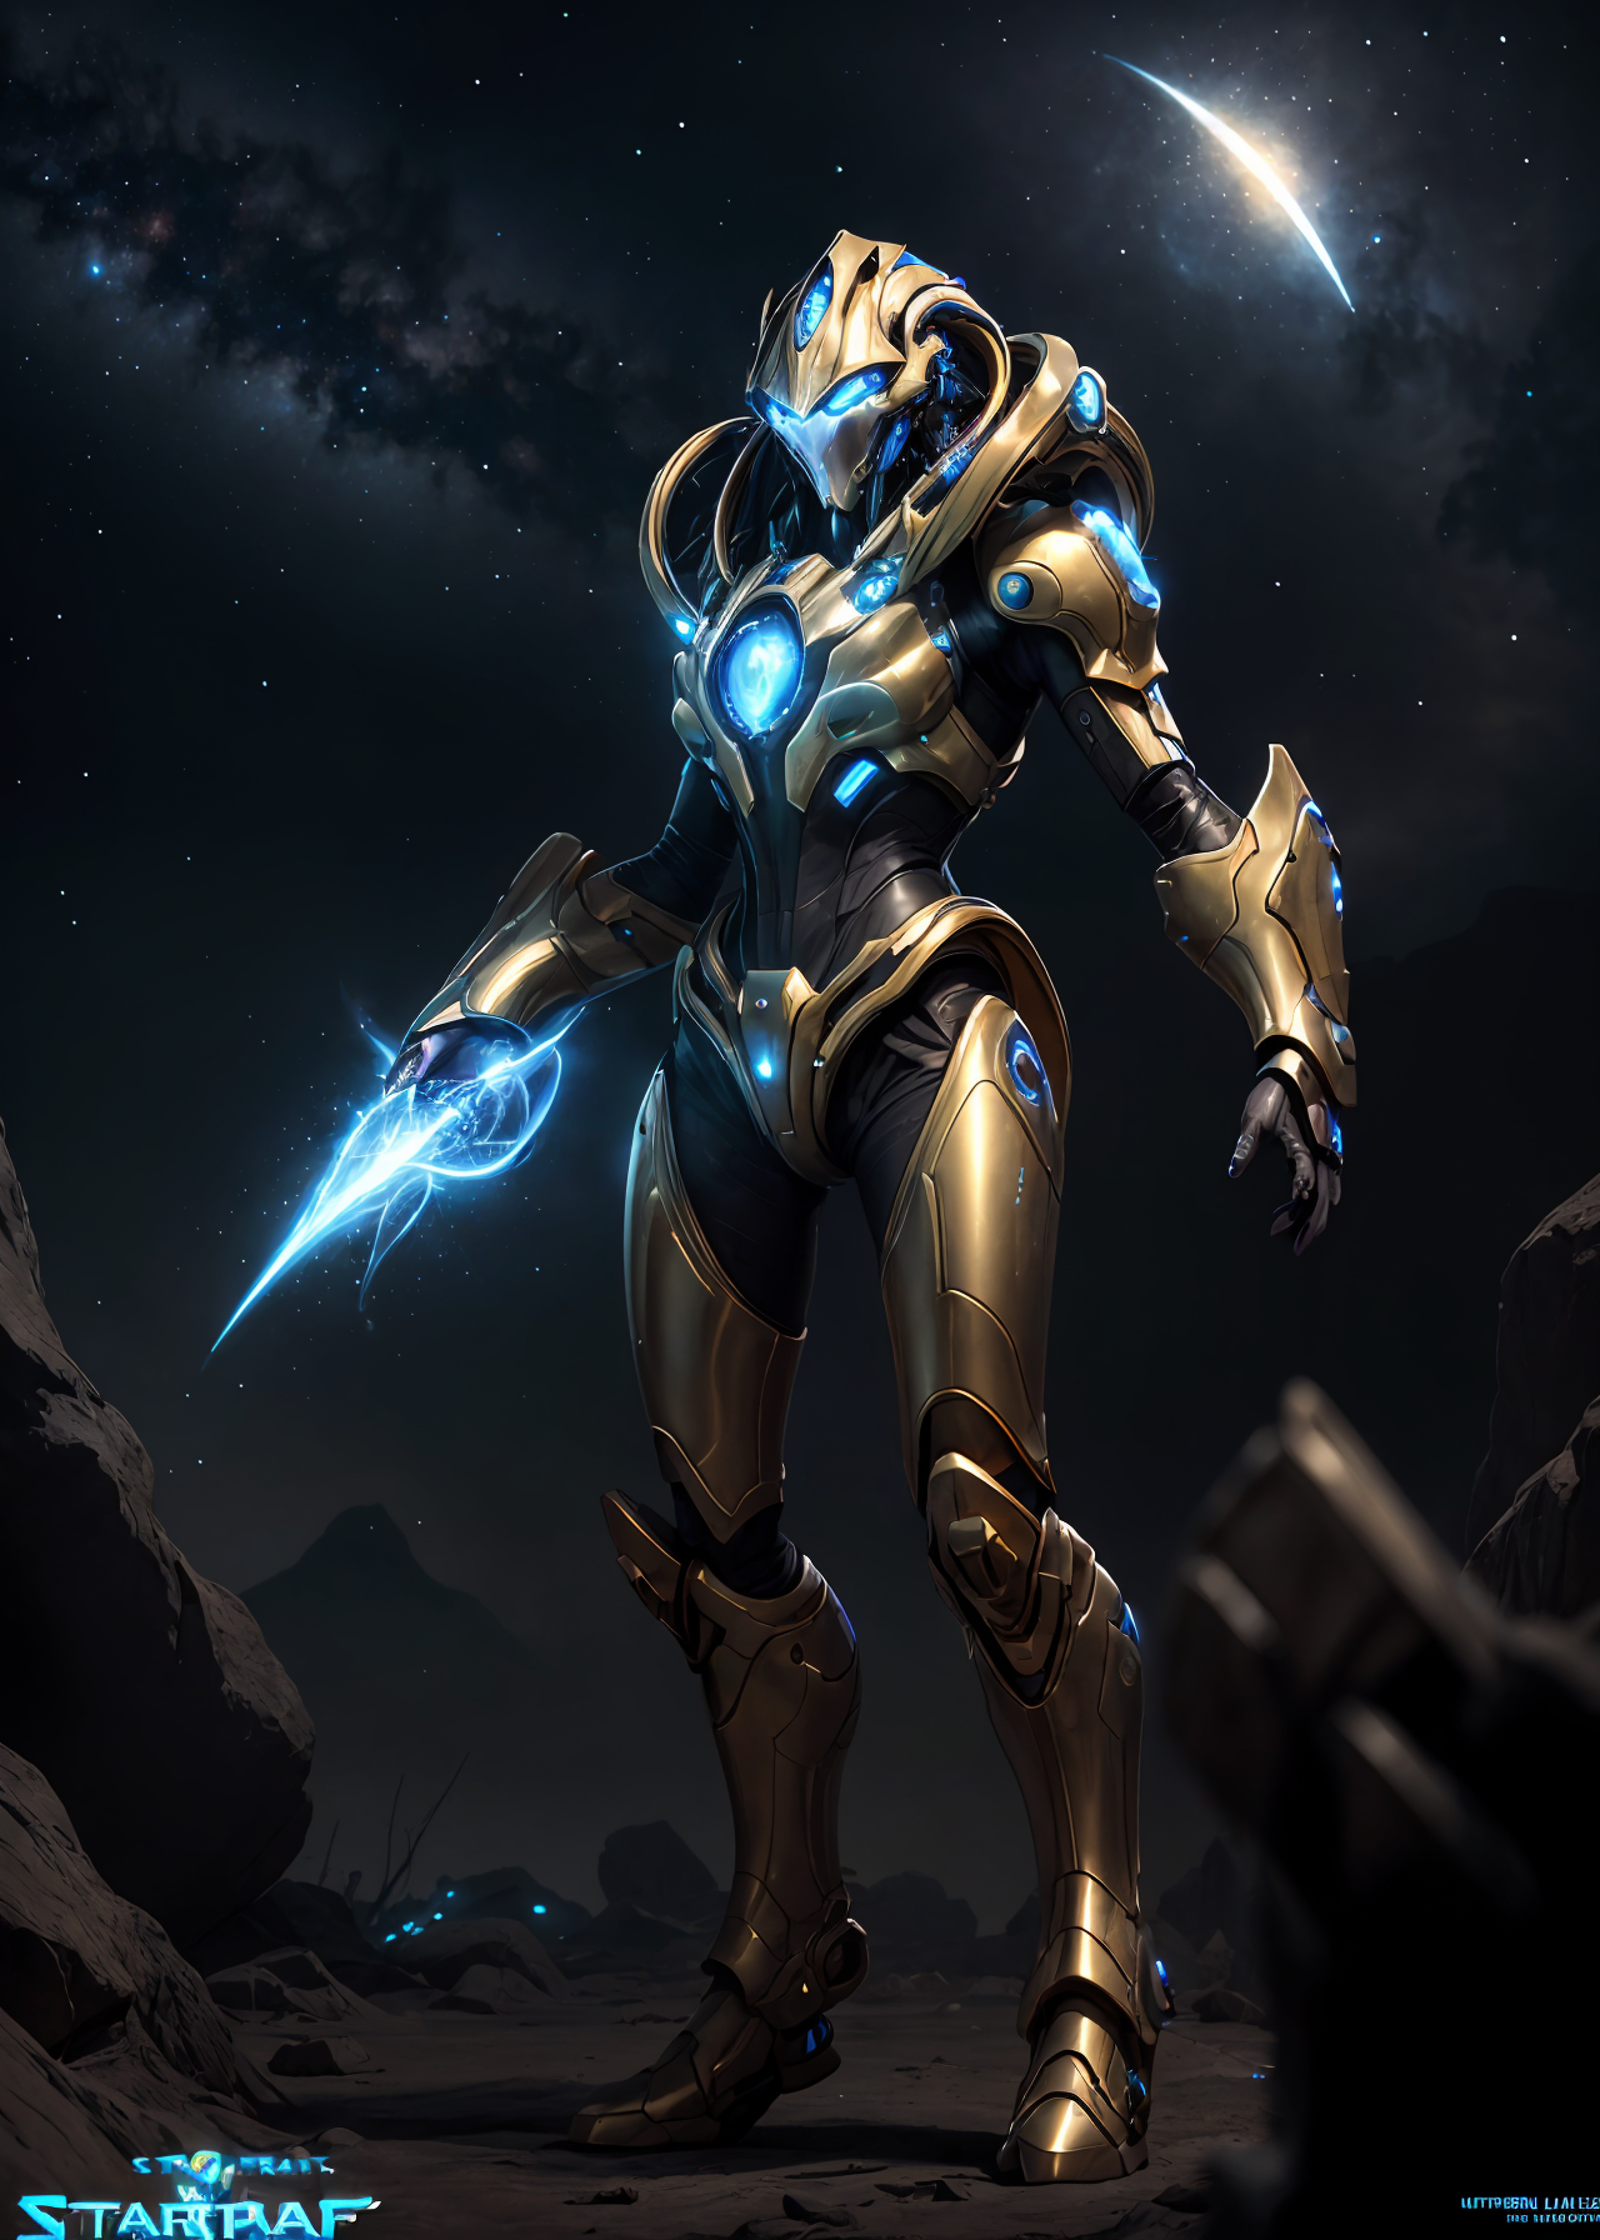 2d artwork, <lora:Protoss:0.7>, a mechanized alien with golden armour, energy blades, blue forcefield, starcraft 2 aesthet...